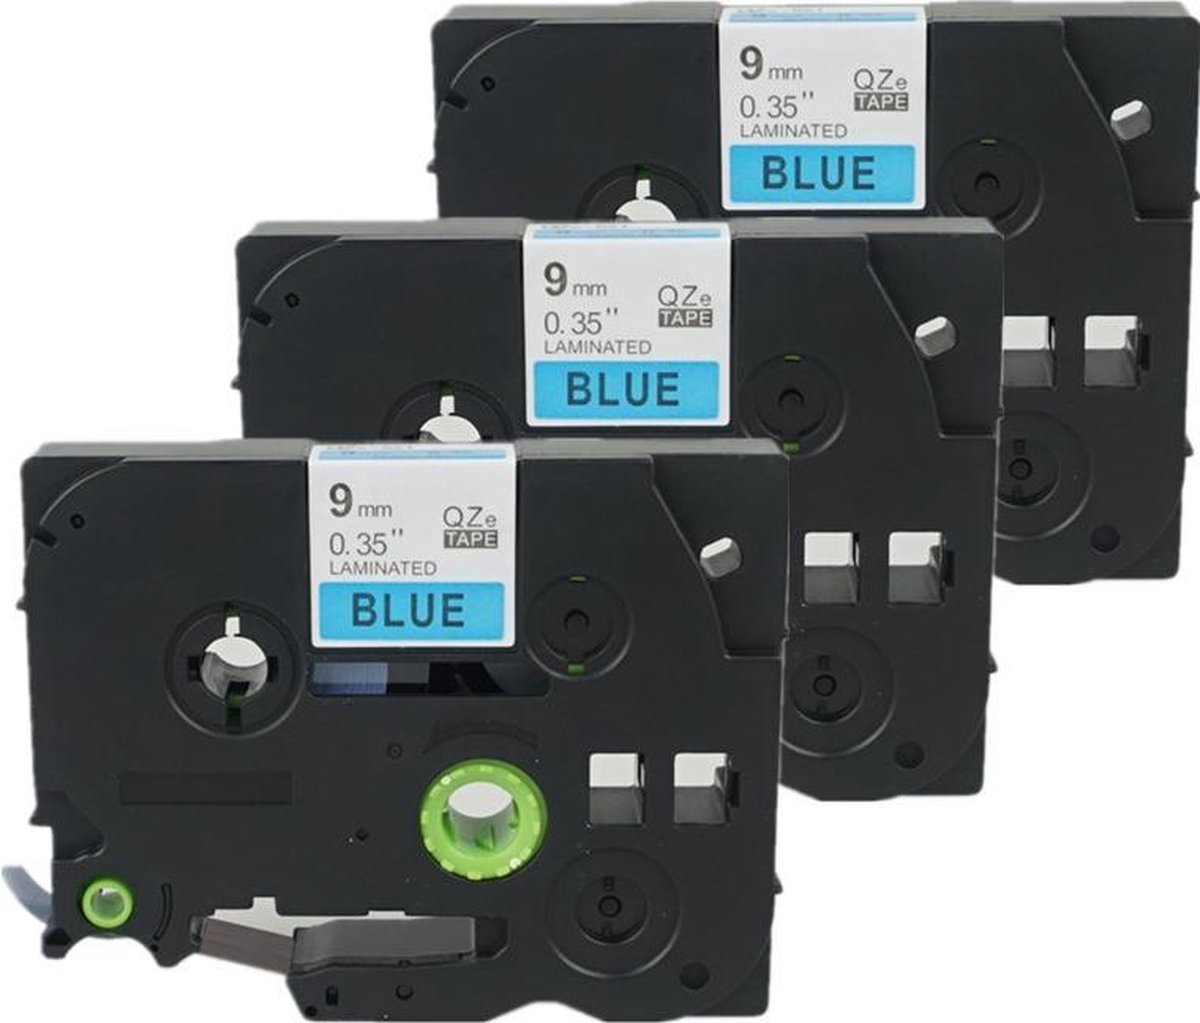 3x Labeltape voor Brother TZe-521 9mm / Zwart op blauw / 9mm x 8m / Compatibele met TZ-521 voor Brother P-Touch 1000